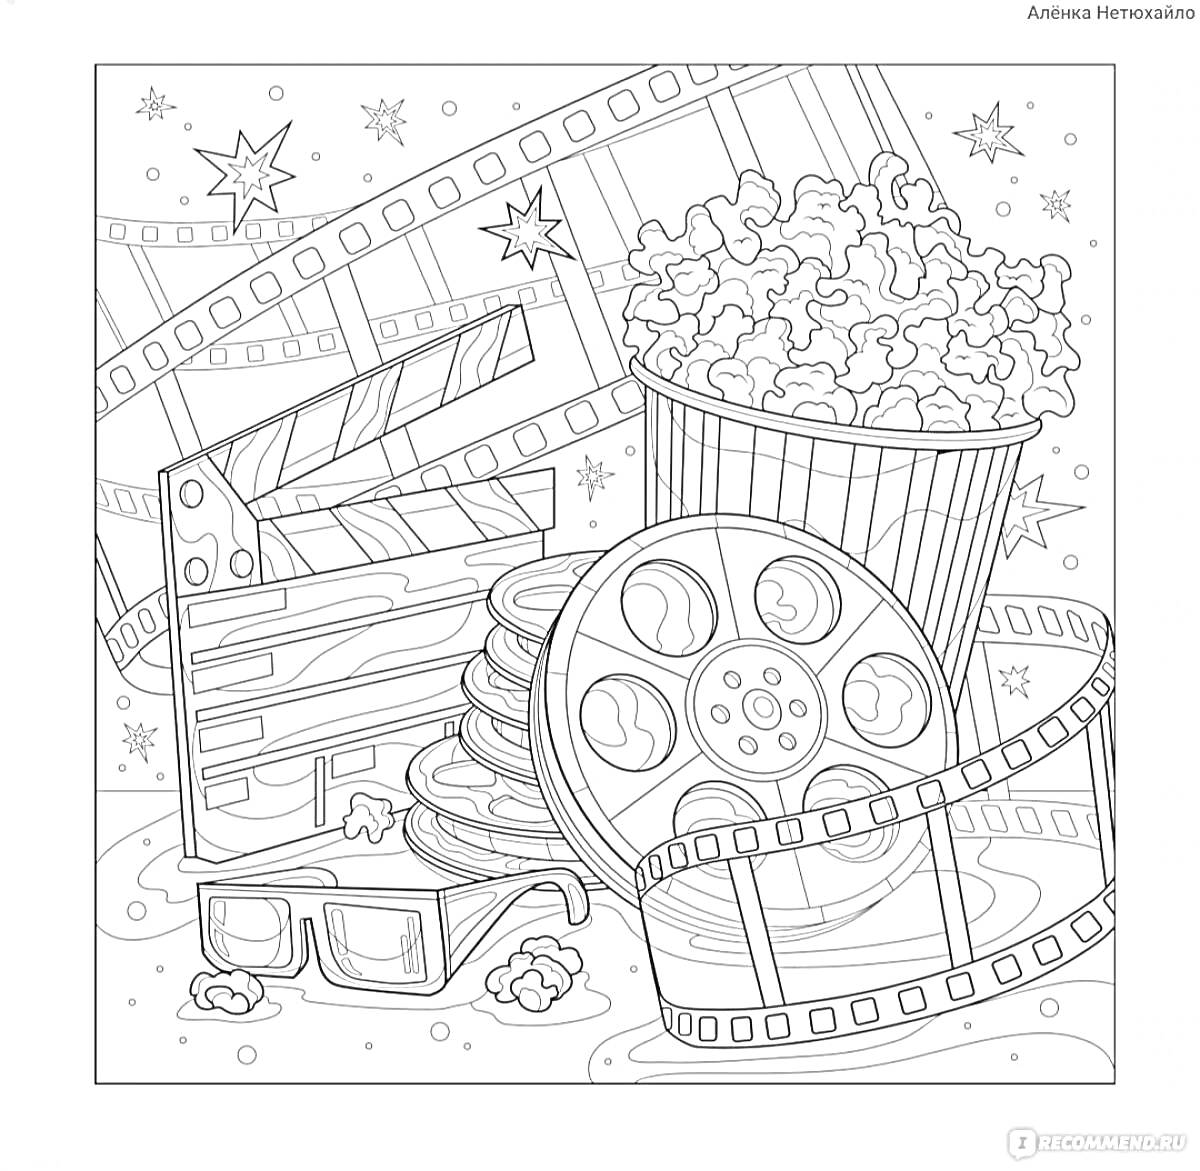 Киноночь: попкорн, катушки с киноплёнкой, очки для 3D, хлопушка для режиссера, звёзды и кинофильмы